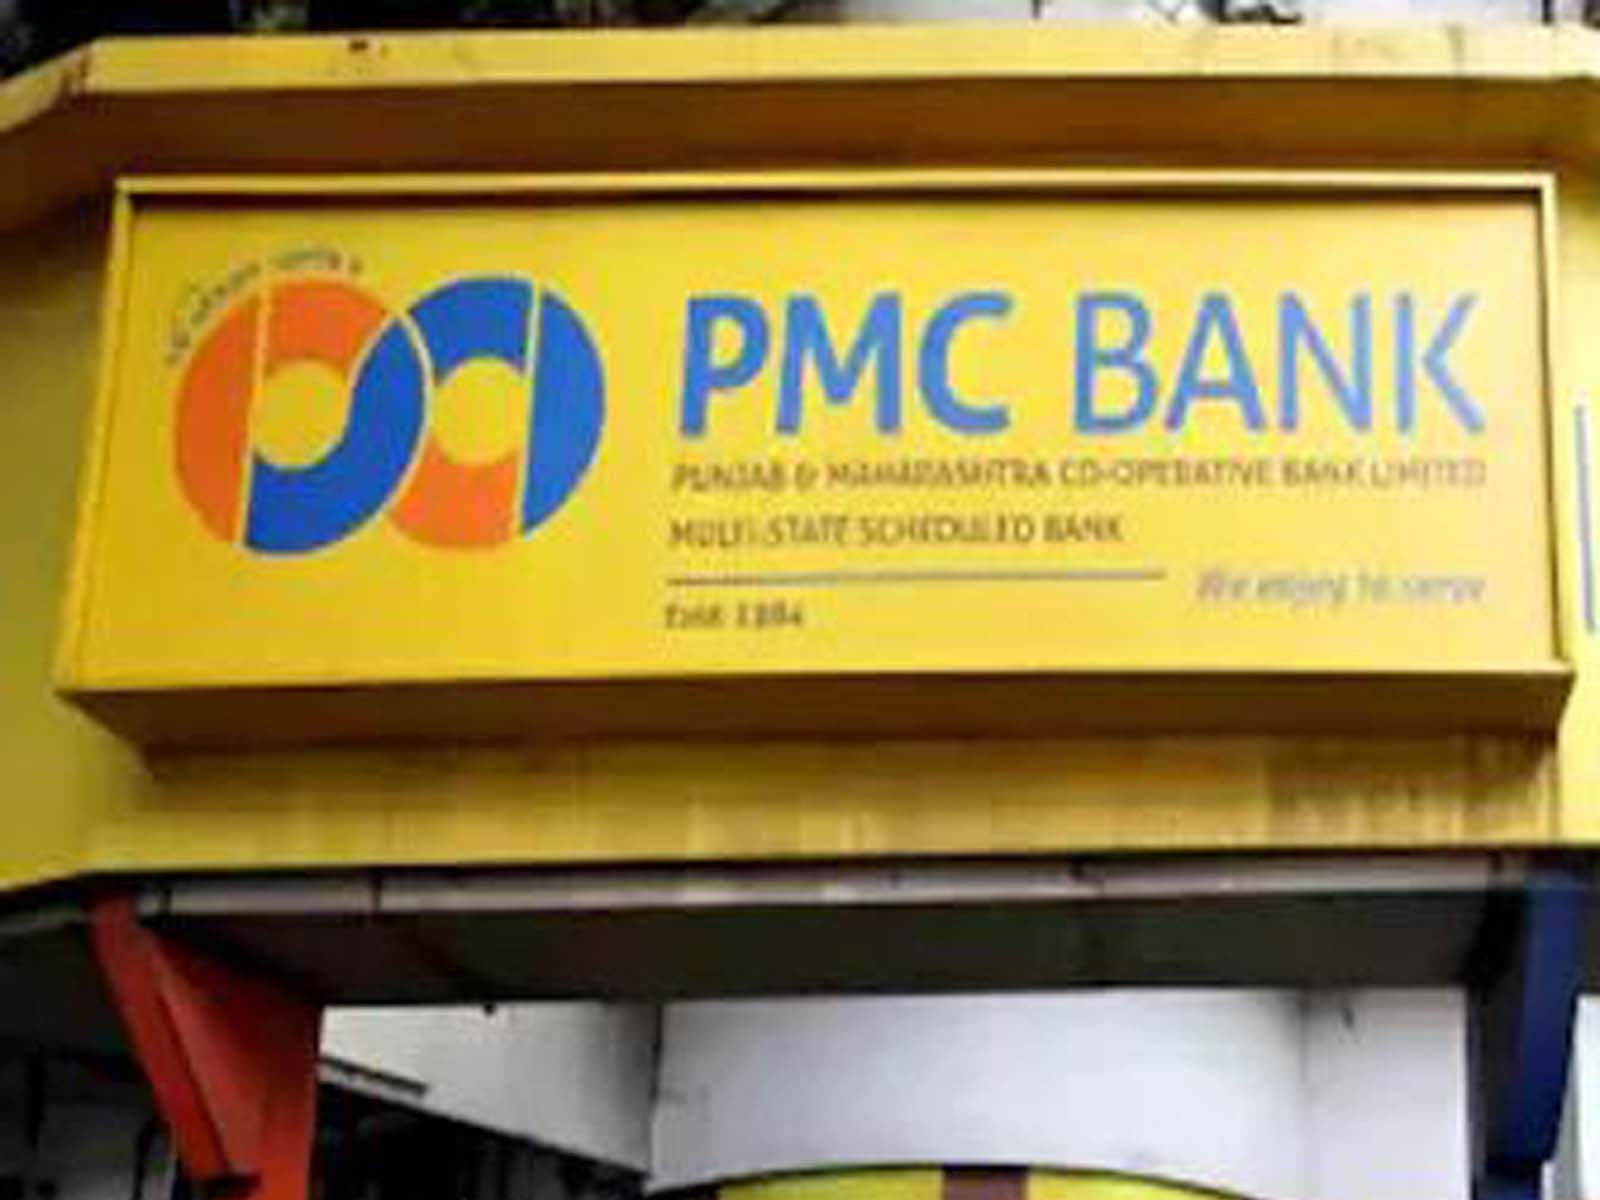 Banking News: ਨਵੇਂ ਸਾਲ 'ਚ ਵੀ ਪੰਜਾਬ ਐਂਡ ਮਹਾਰਾਸ਼ਟਰ ਕੋ-ਆਪਰੇਟਿਵ ਬੈਂਕ (PMC) ਦੇ ਗਾਹਕਾਂ ਦੀਆਂ ਮੁਸ਼ਕਿਲਾਂ ਘੱਟ ਹੁੰਦੀਆਂ ਨਜ਼ਰ ਨਹੀਂ ਆ ਰਹੀਆਂ। RBI ਨੇ PMC ਬੈਂਕ 'ਤੇ ਲਗਾਈਆਂ ਪਾਬੰਦੀਆਂ ਨੂੰ ਅਗਲੇ ਤਿੰਨ ਮਹੀਨਿਆਂ ਲਈ ਵਧਾ ਦਿੱਤਾ ਹੈ। ਆਰਬੀਆਈ ਵੱਲੋਂ ਪੀਐਮਸੀ ਬੈਂਕ (PMC Bank) 'ਤੇ ਲਗਾਈਆਂ ਗਈਆਂ ਪਾਬੰਦੀਆਂ ਮਾਰਚ ਦੇ ਅੰਤ ਤੱਕ ਲਾਗੂ ਰਹਿਣਗੀਆਂ।